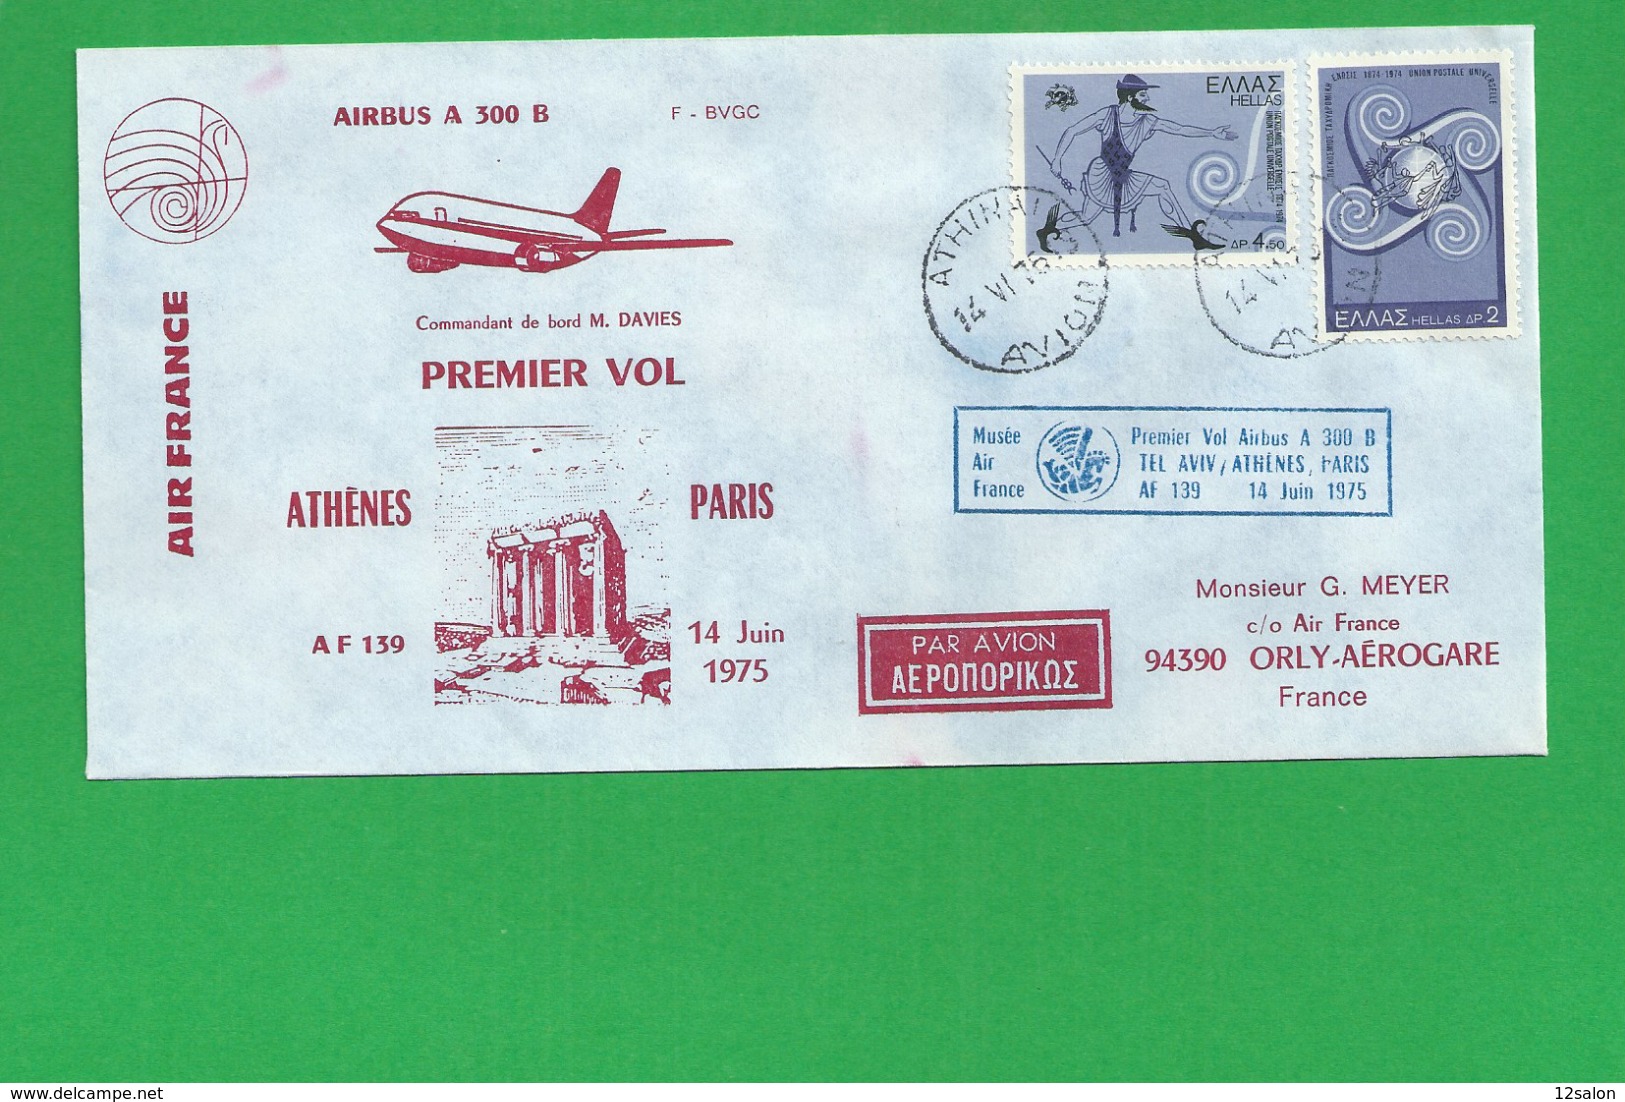 PREMIERE LIAISON AIRBUS A 300 B ARHENES PARIS - 1960-.... Covers & Documents